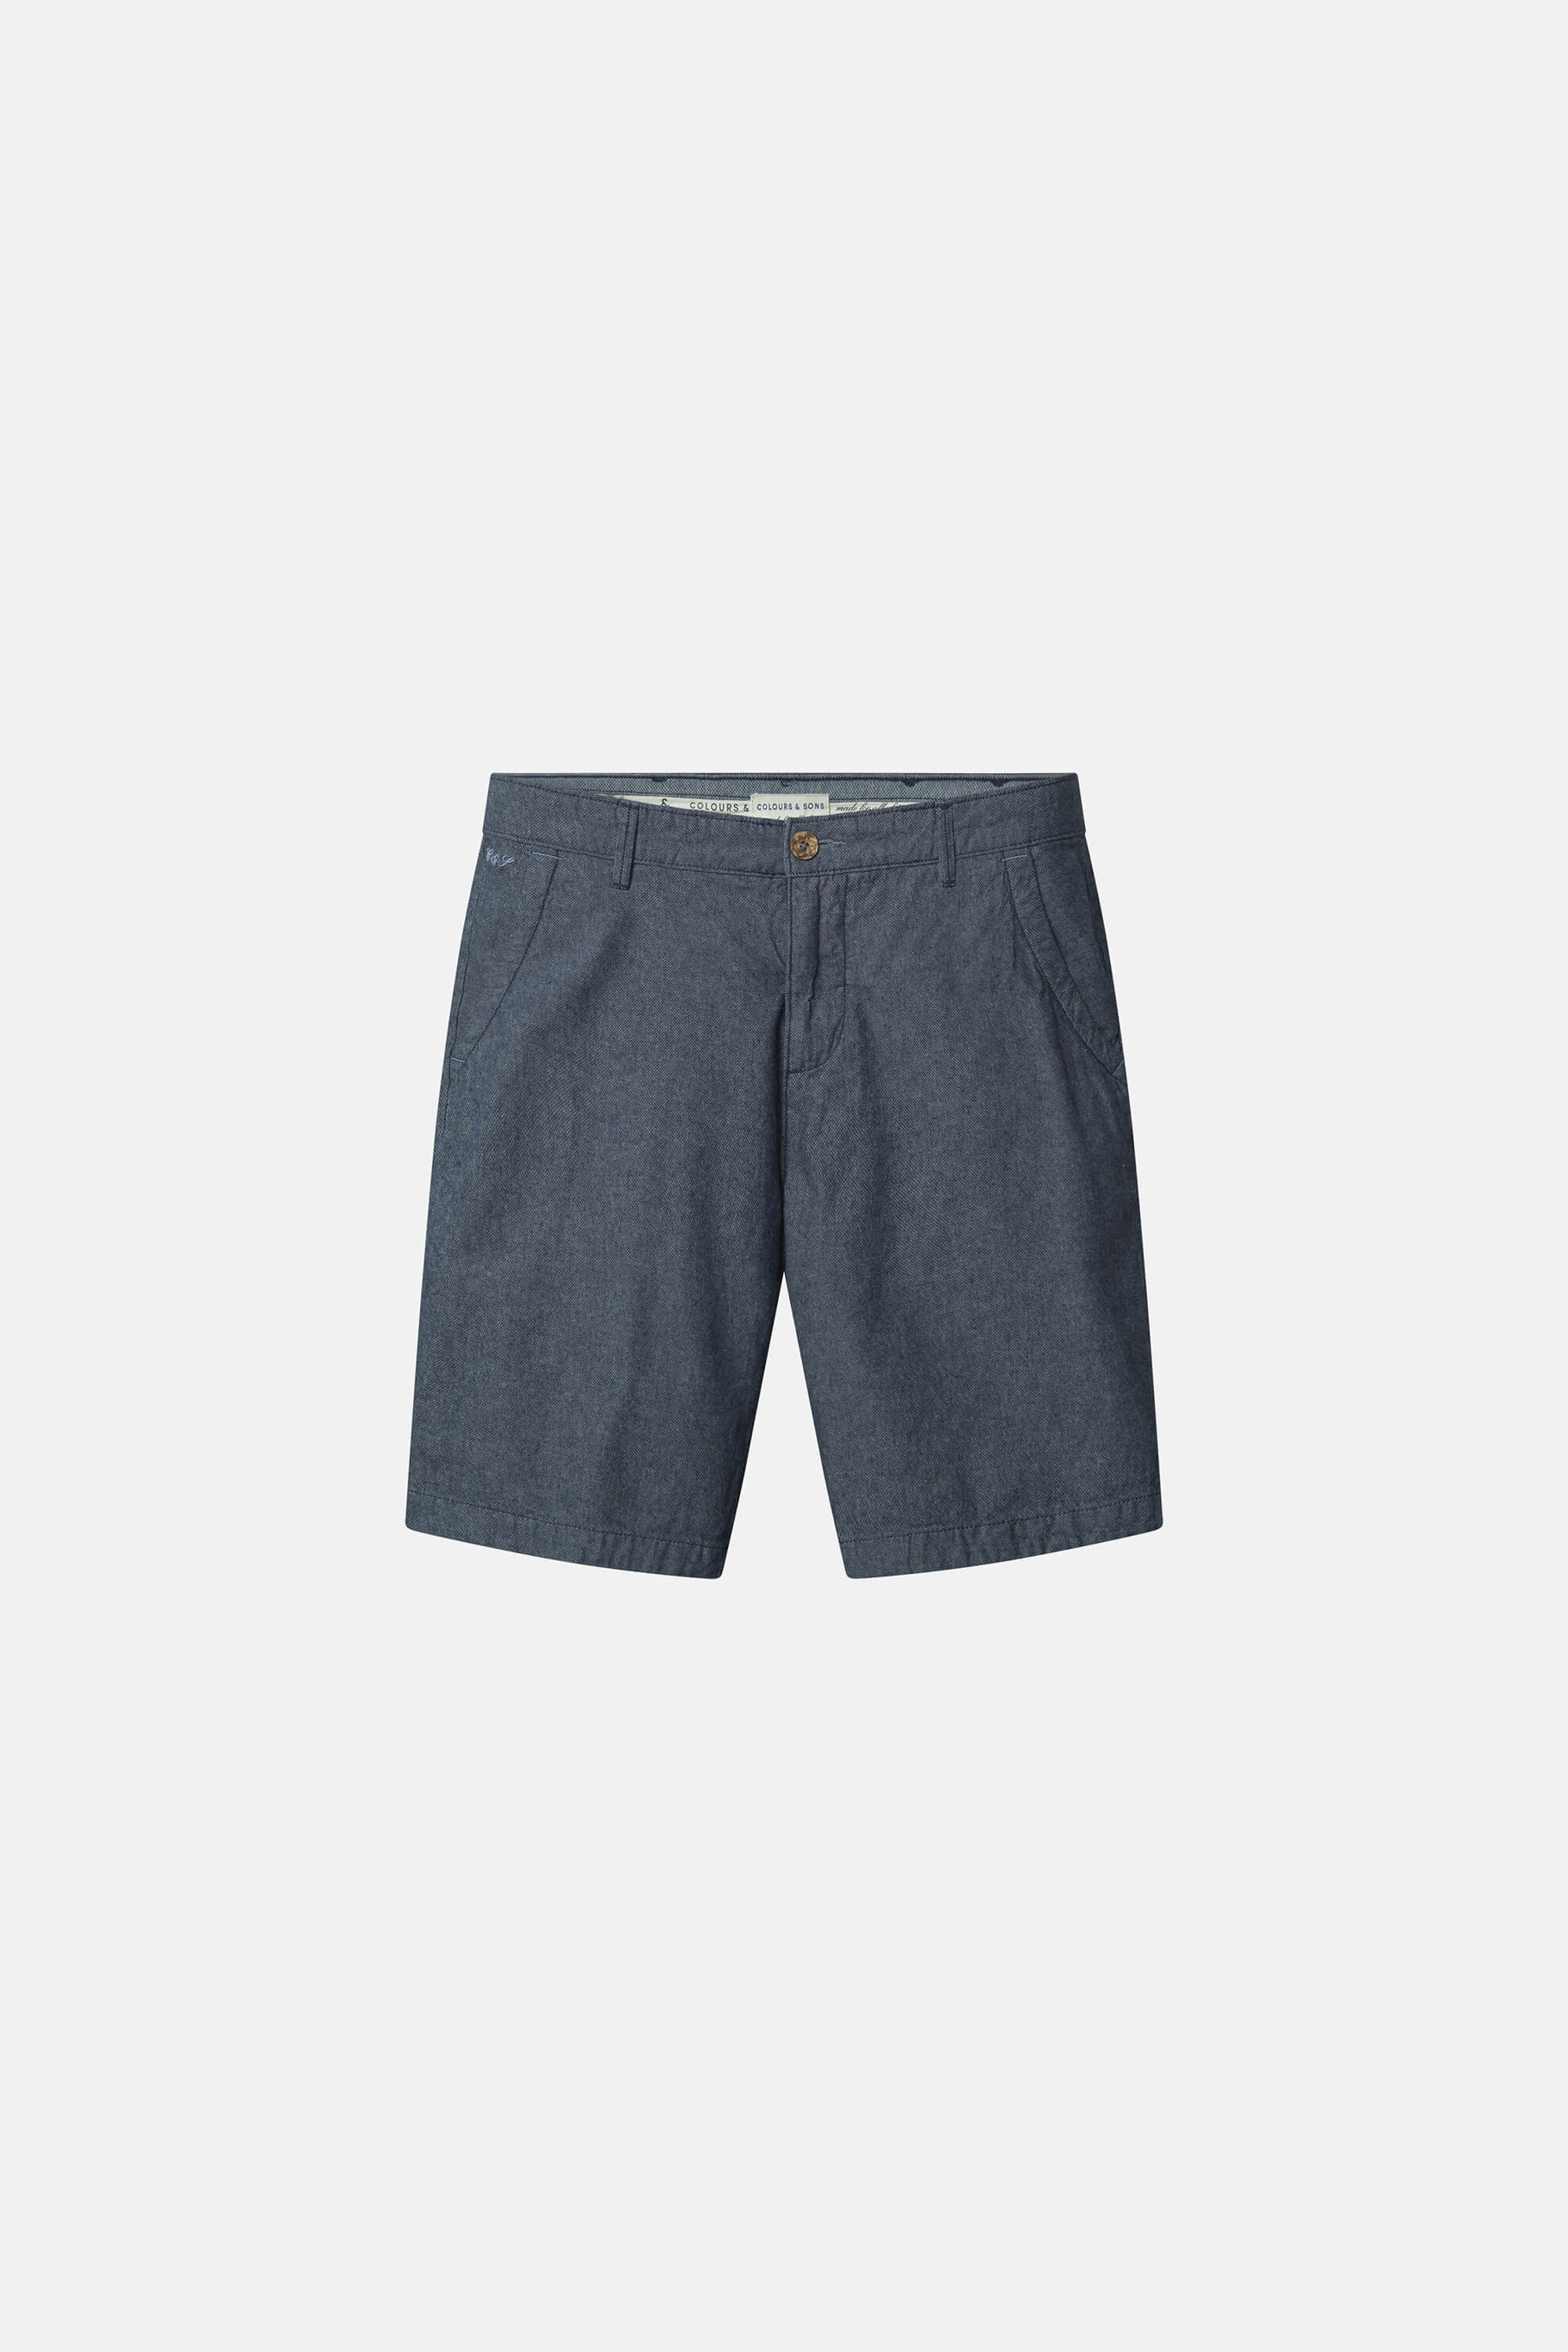 Herren Shorts, navy, 100% Baumwolle von Colours & Sons